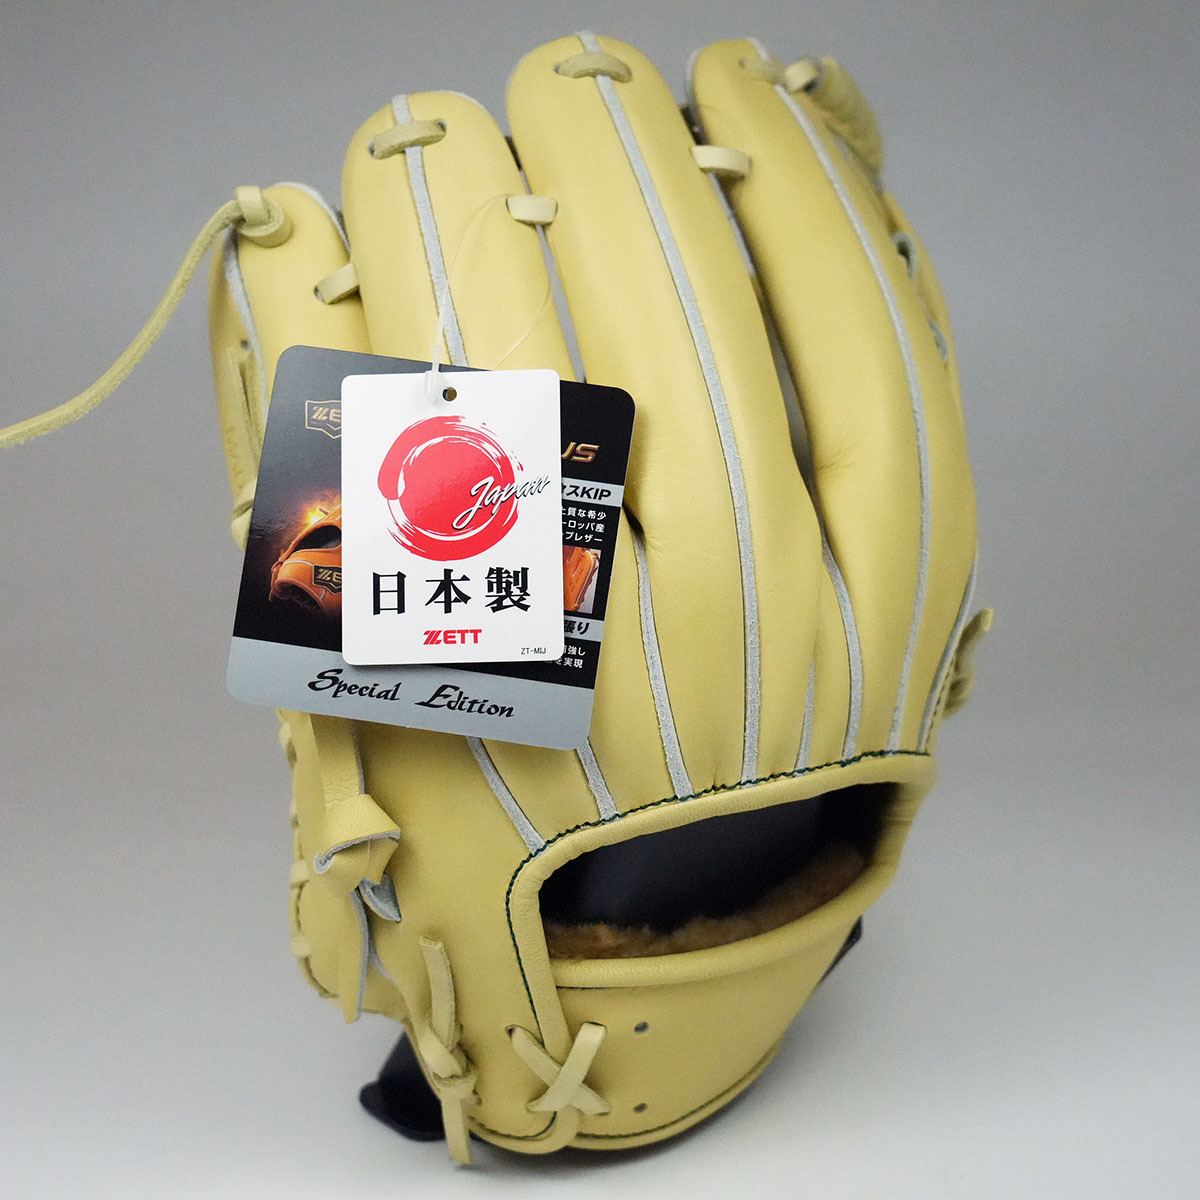 日本製ZETT PROSTATUS SPECIAL EDITION 吉川尚輝頂級金標硬式內野手套